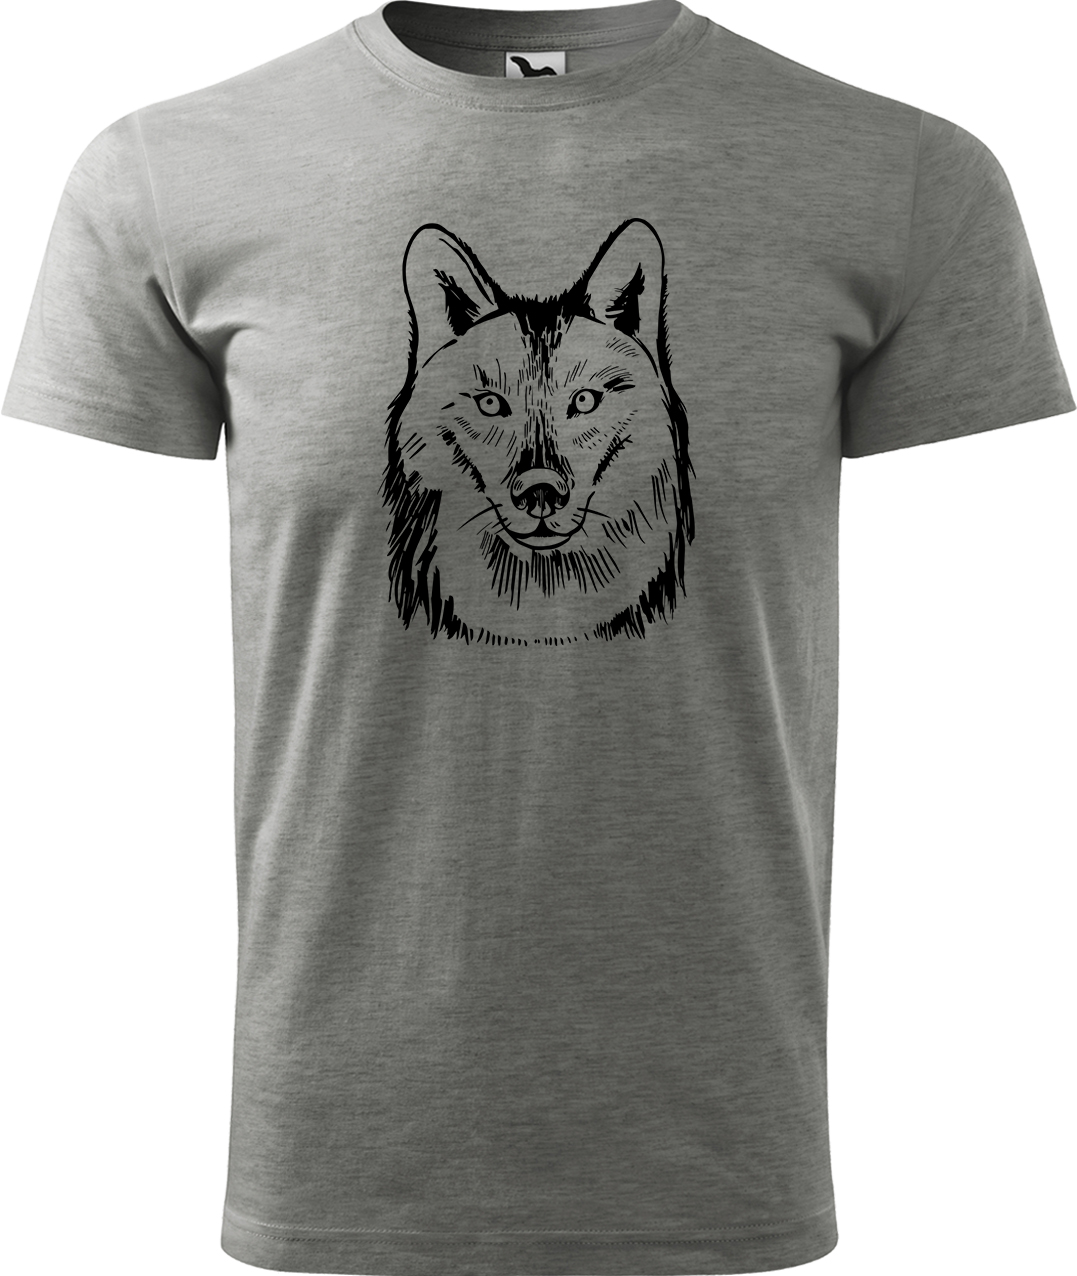 Pánské tričko s vlkem - Kresba vlka Velikost: M, Barva: Tmavě šedý melír (12), Střih: pánský